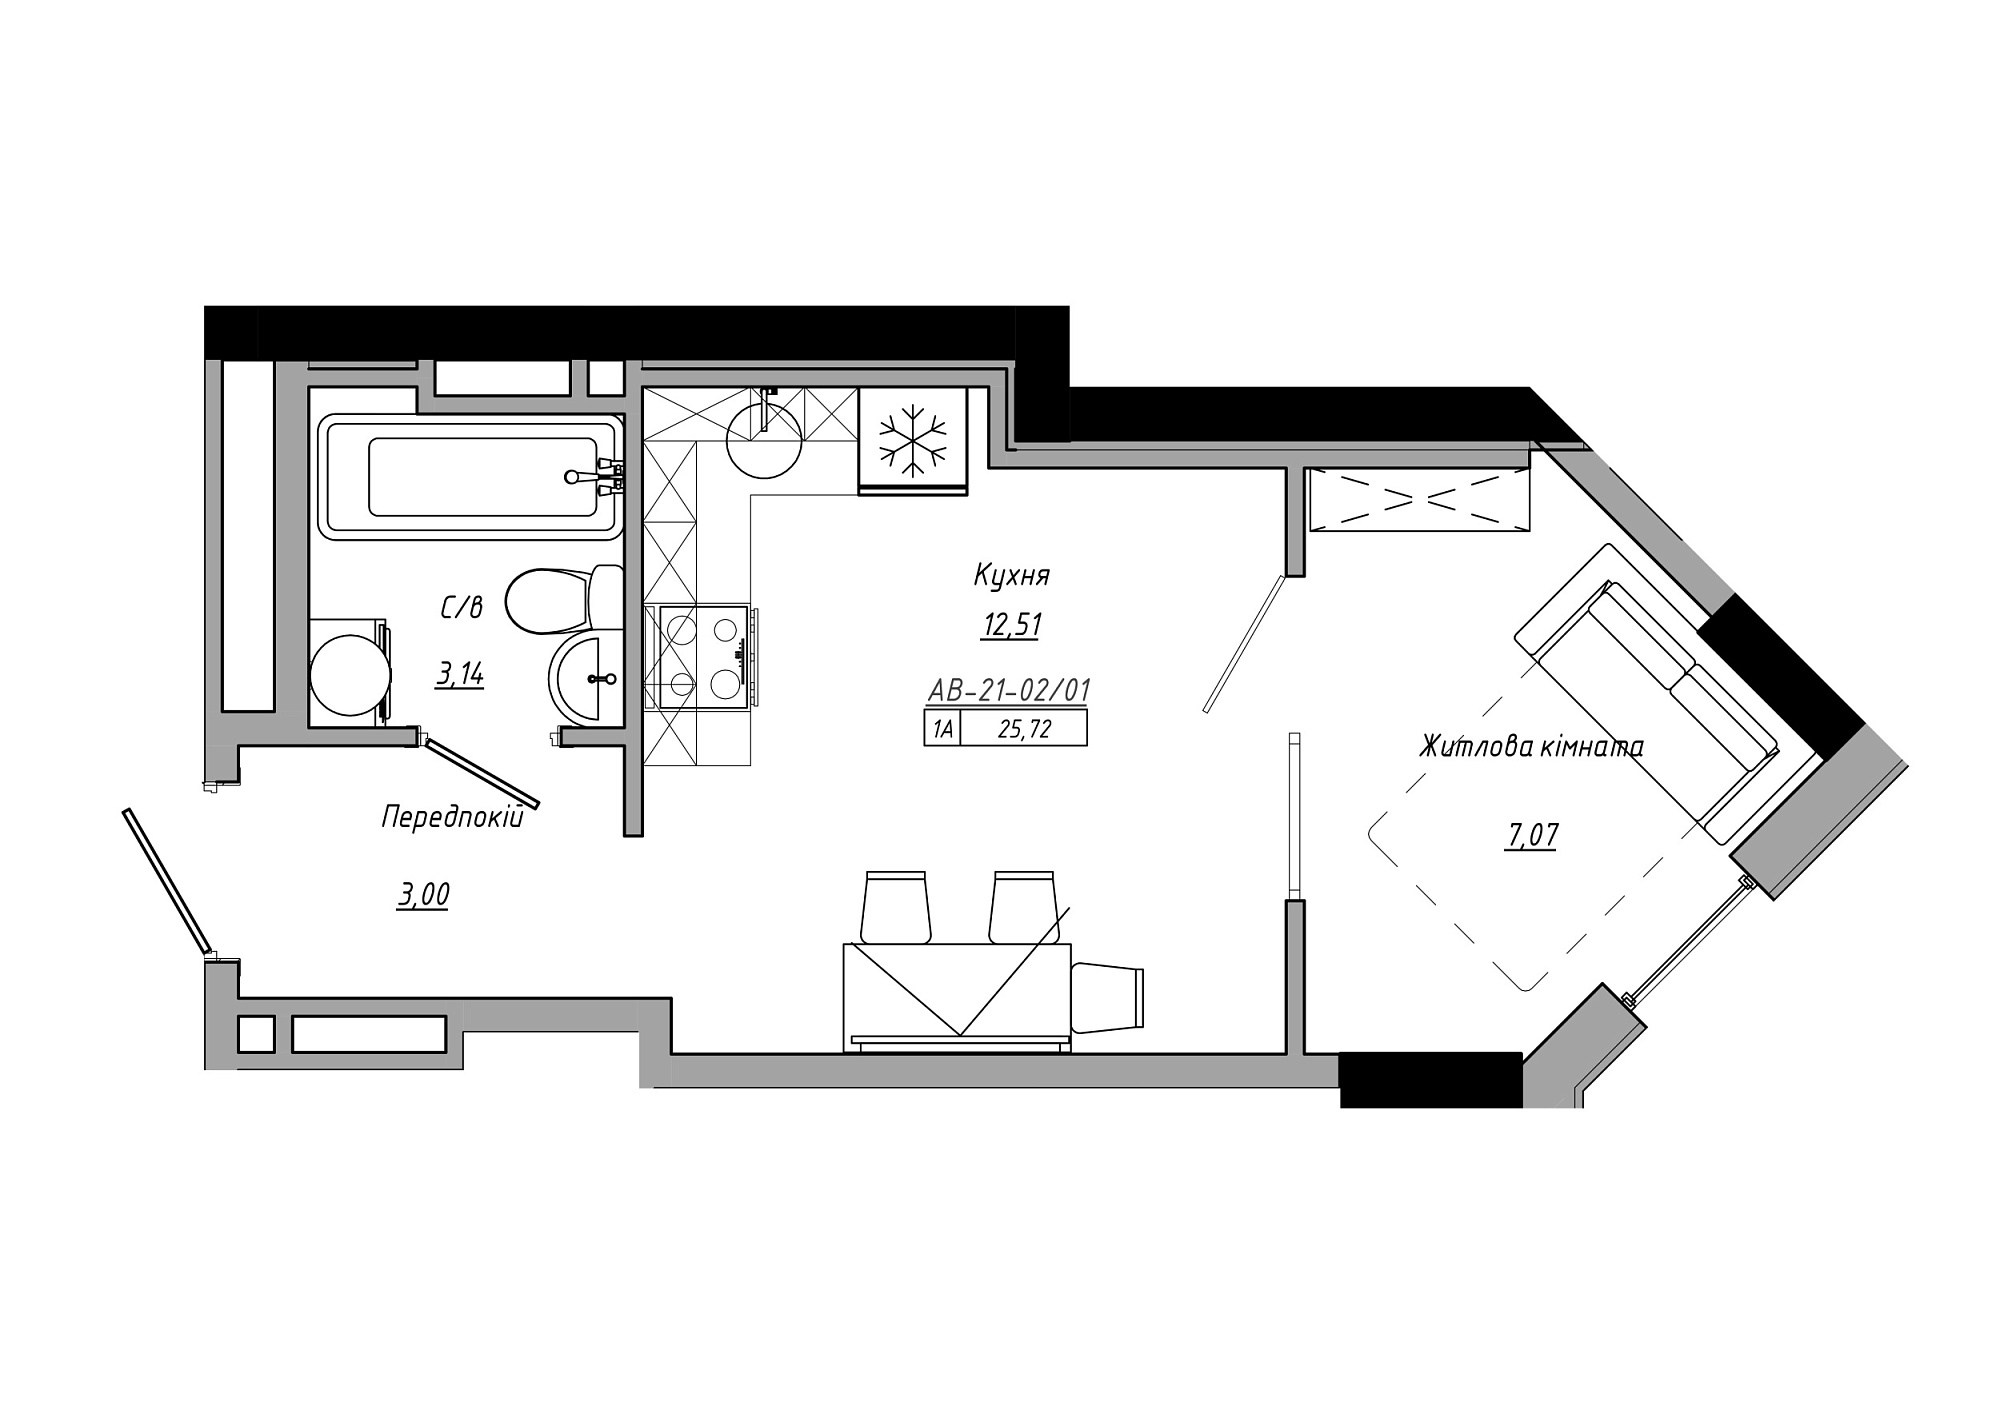 Планування 1-к квартира площею 25.72м2, AB-21-02/00001.